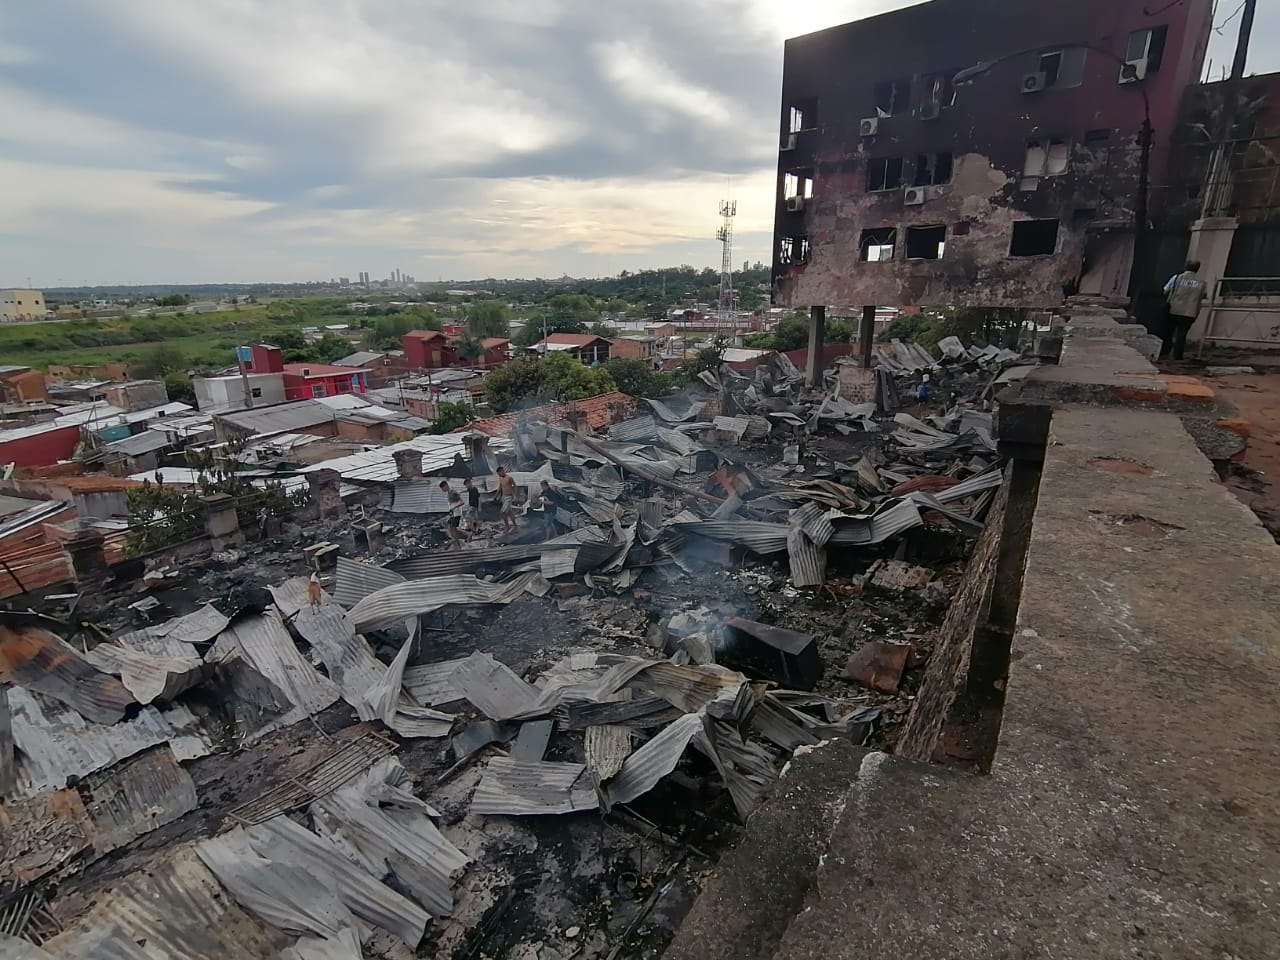 El bloque norte del Cabildo se vio afectado por el incendio. Foto: Cabildo